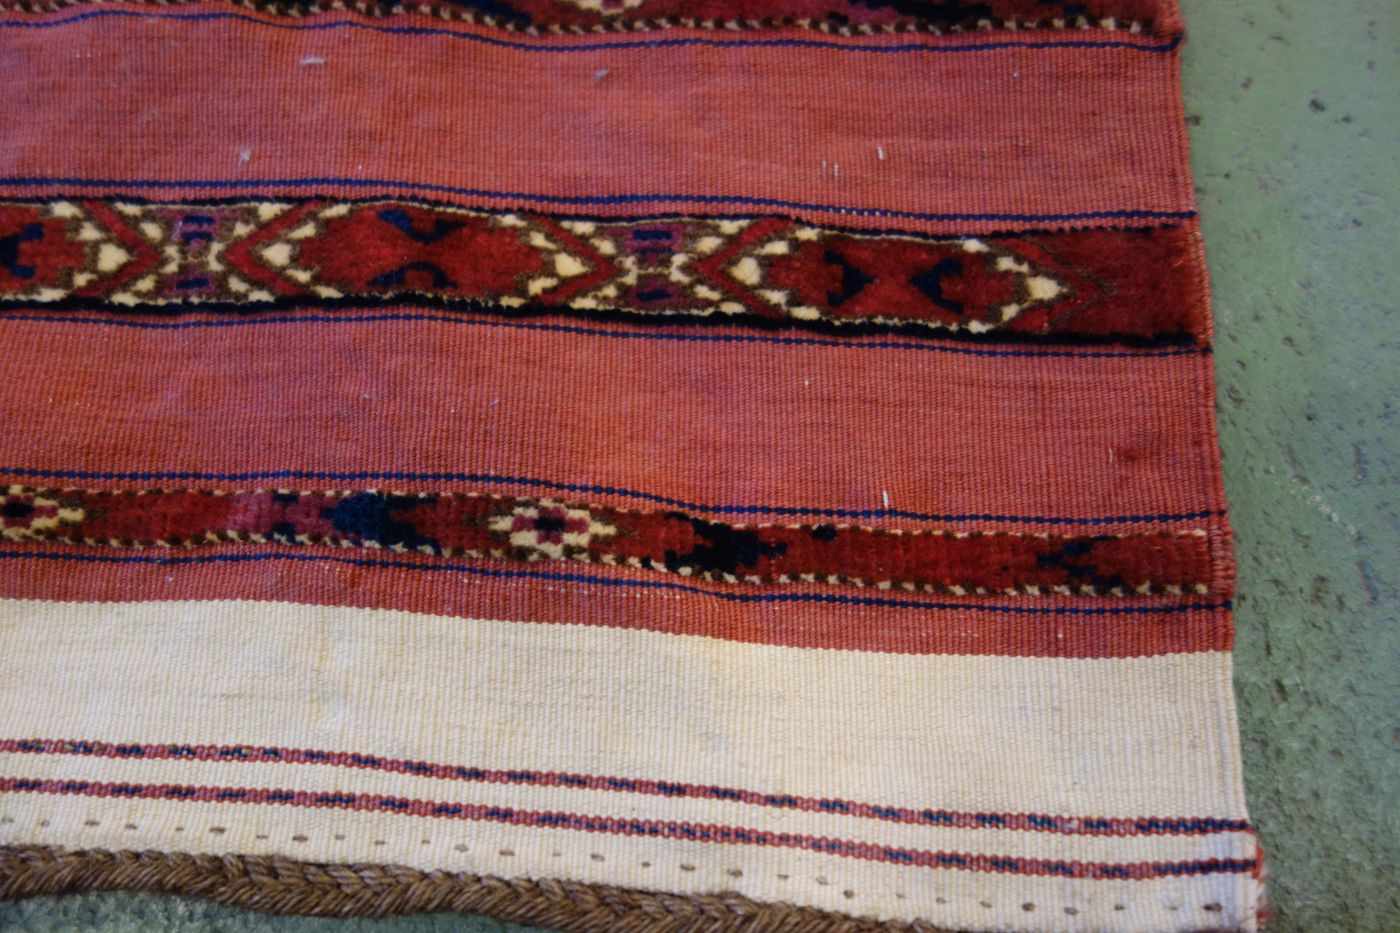 TEKKE AK-TSCHOWAL / TEPPICH / carpet, Turkmenistan, wohl 2. H. 19. Jh., Wechsel von Flor und - Bild 13 aus 18